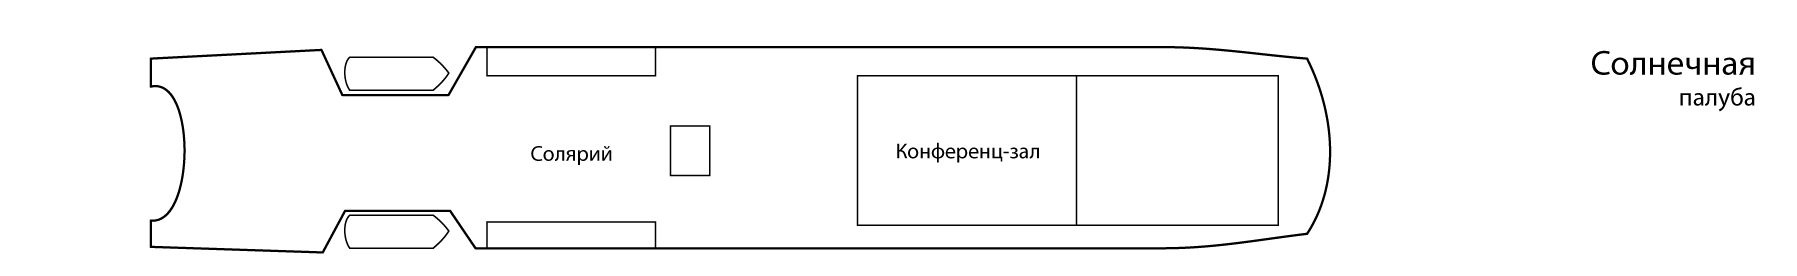 Планы палуб Константин Симонов: Солнечная палуба